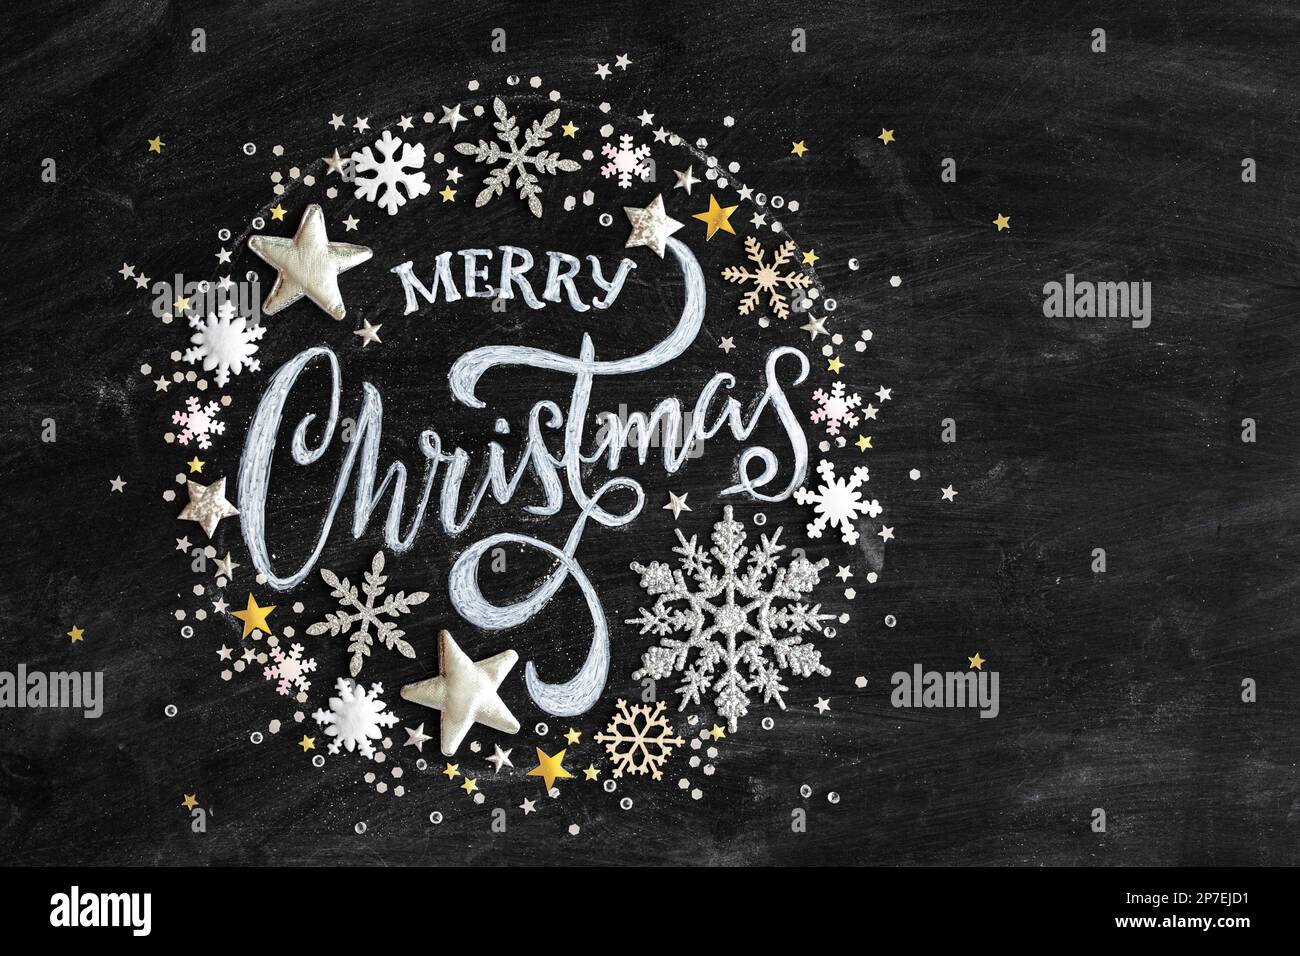 Frohe Weihnachten in Kreide auf einer schwarzen Tafel mit Konfetti und Weihnachtsdekorationen, flach liegend von oben gesehen Stockfoto